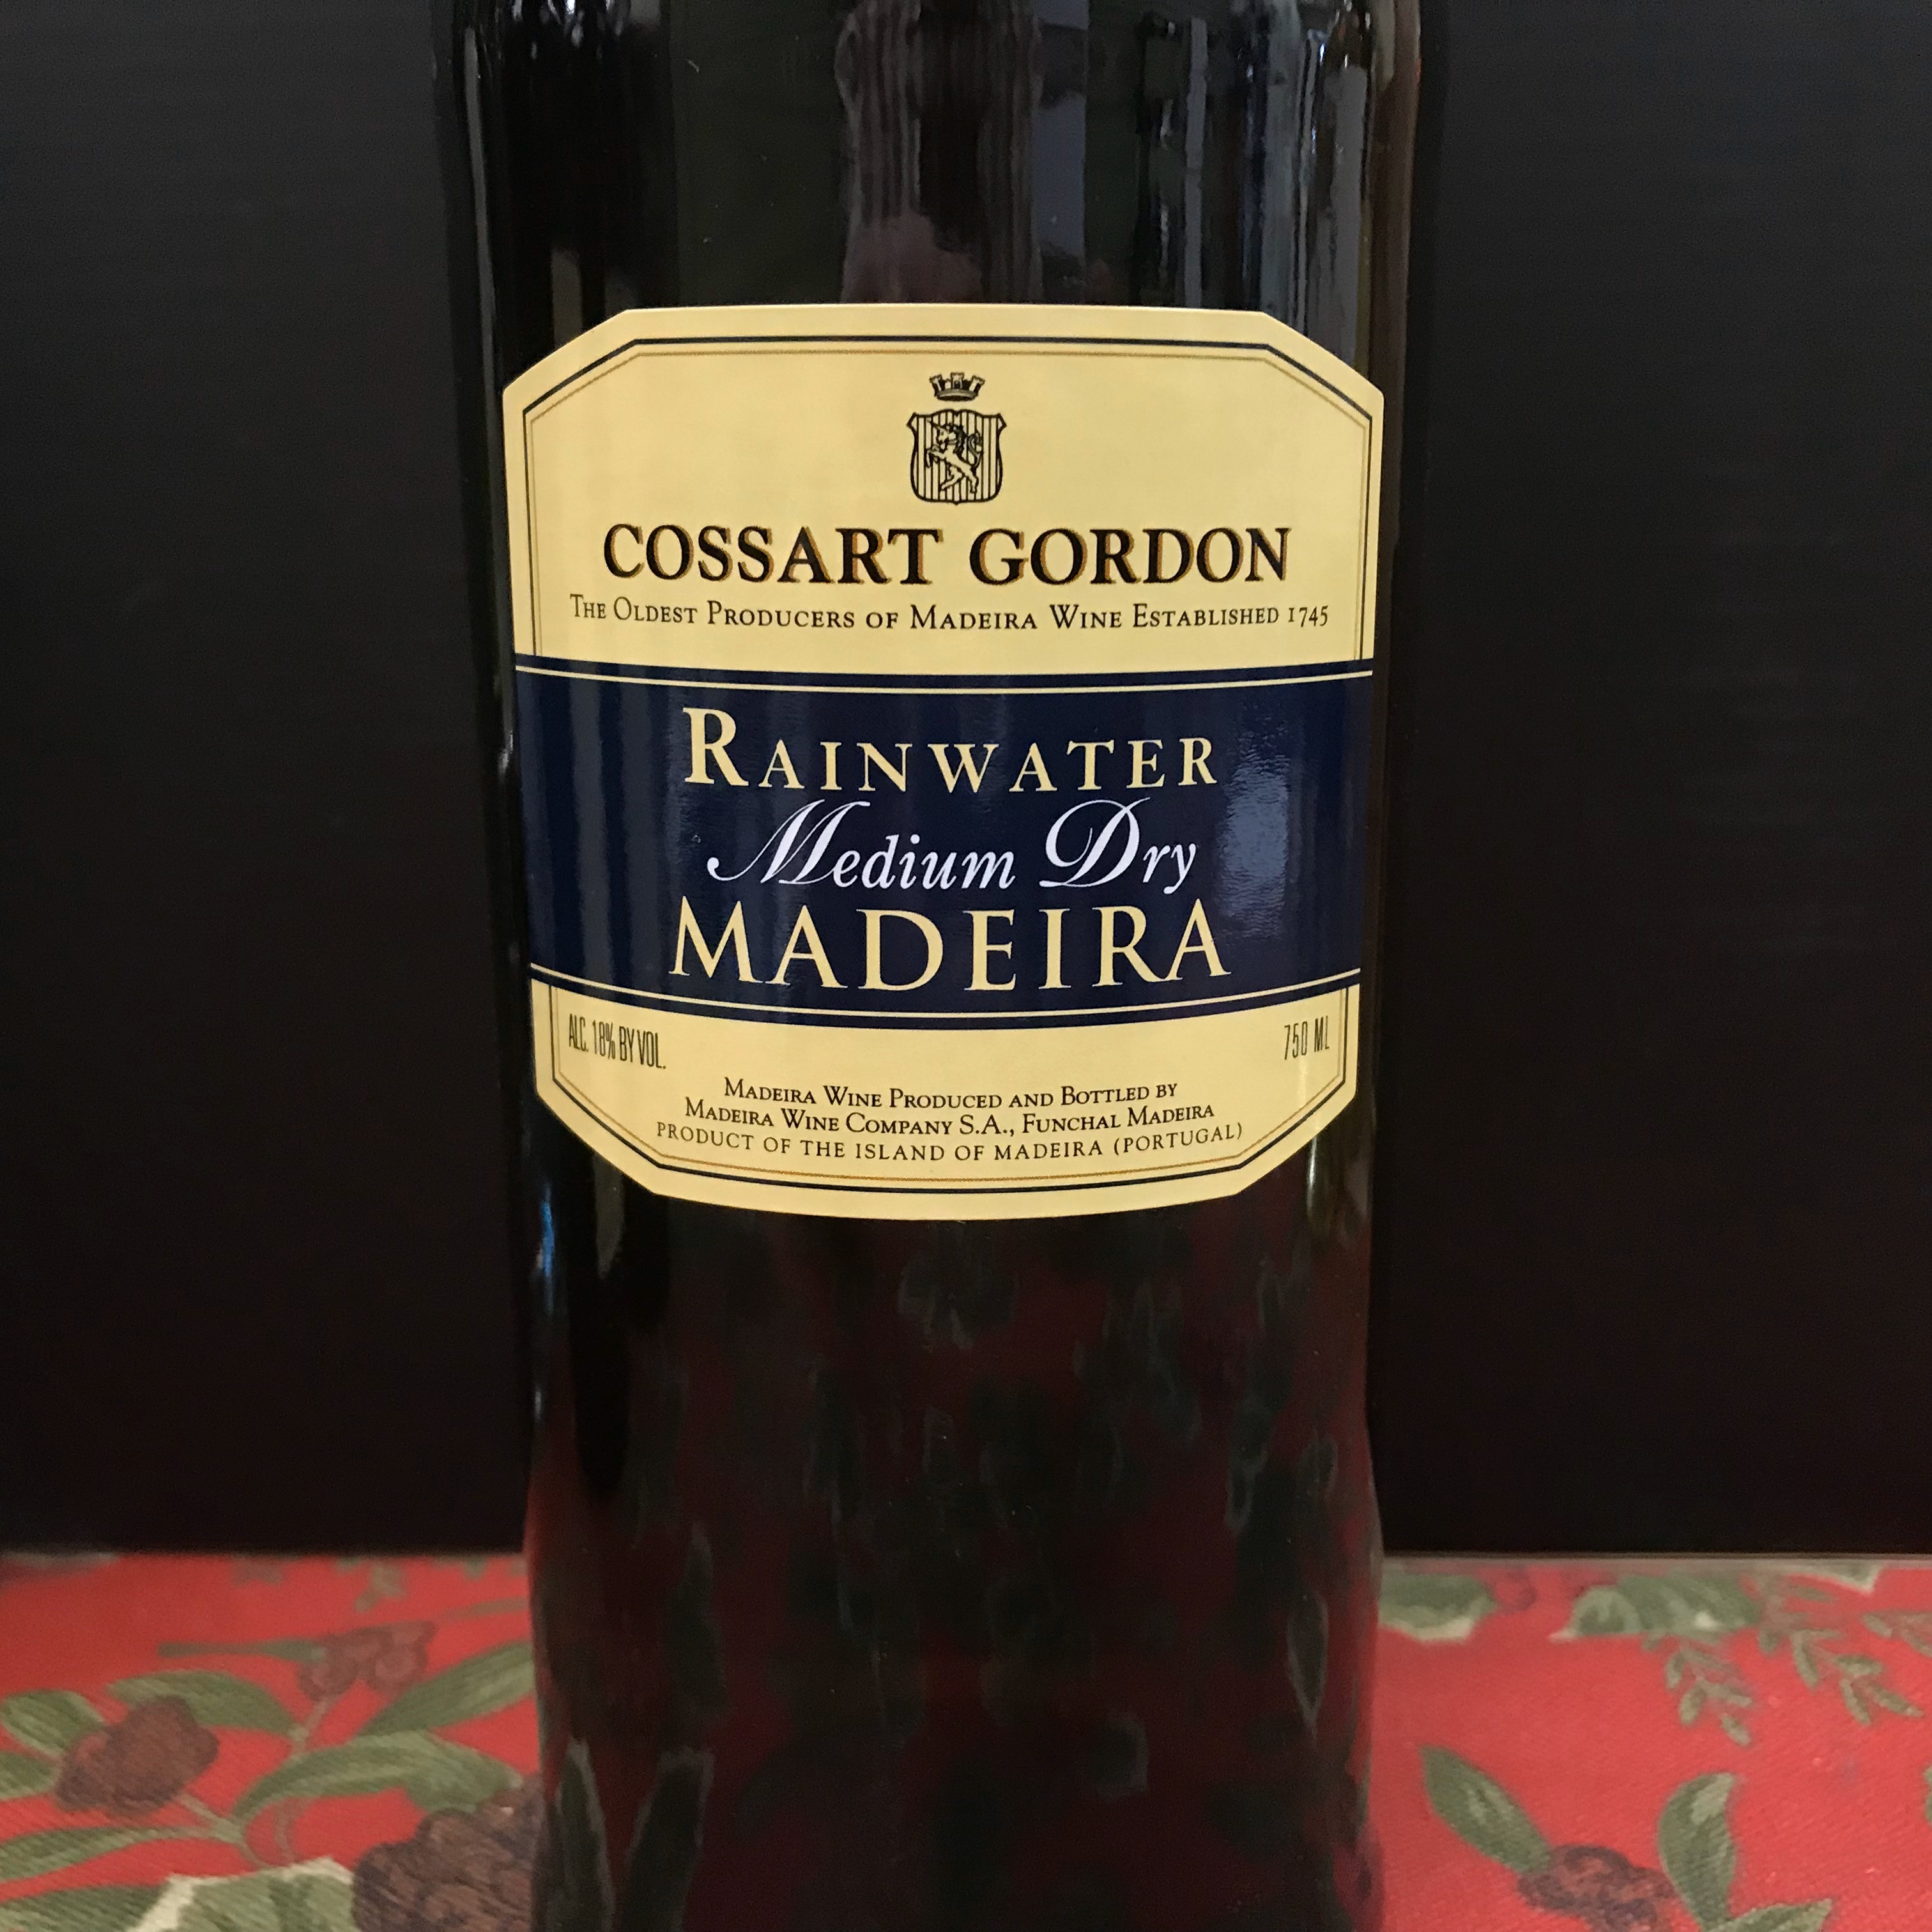 Cossart Gordon Rainwater Medium Dry Madeira